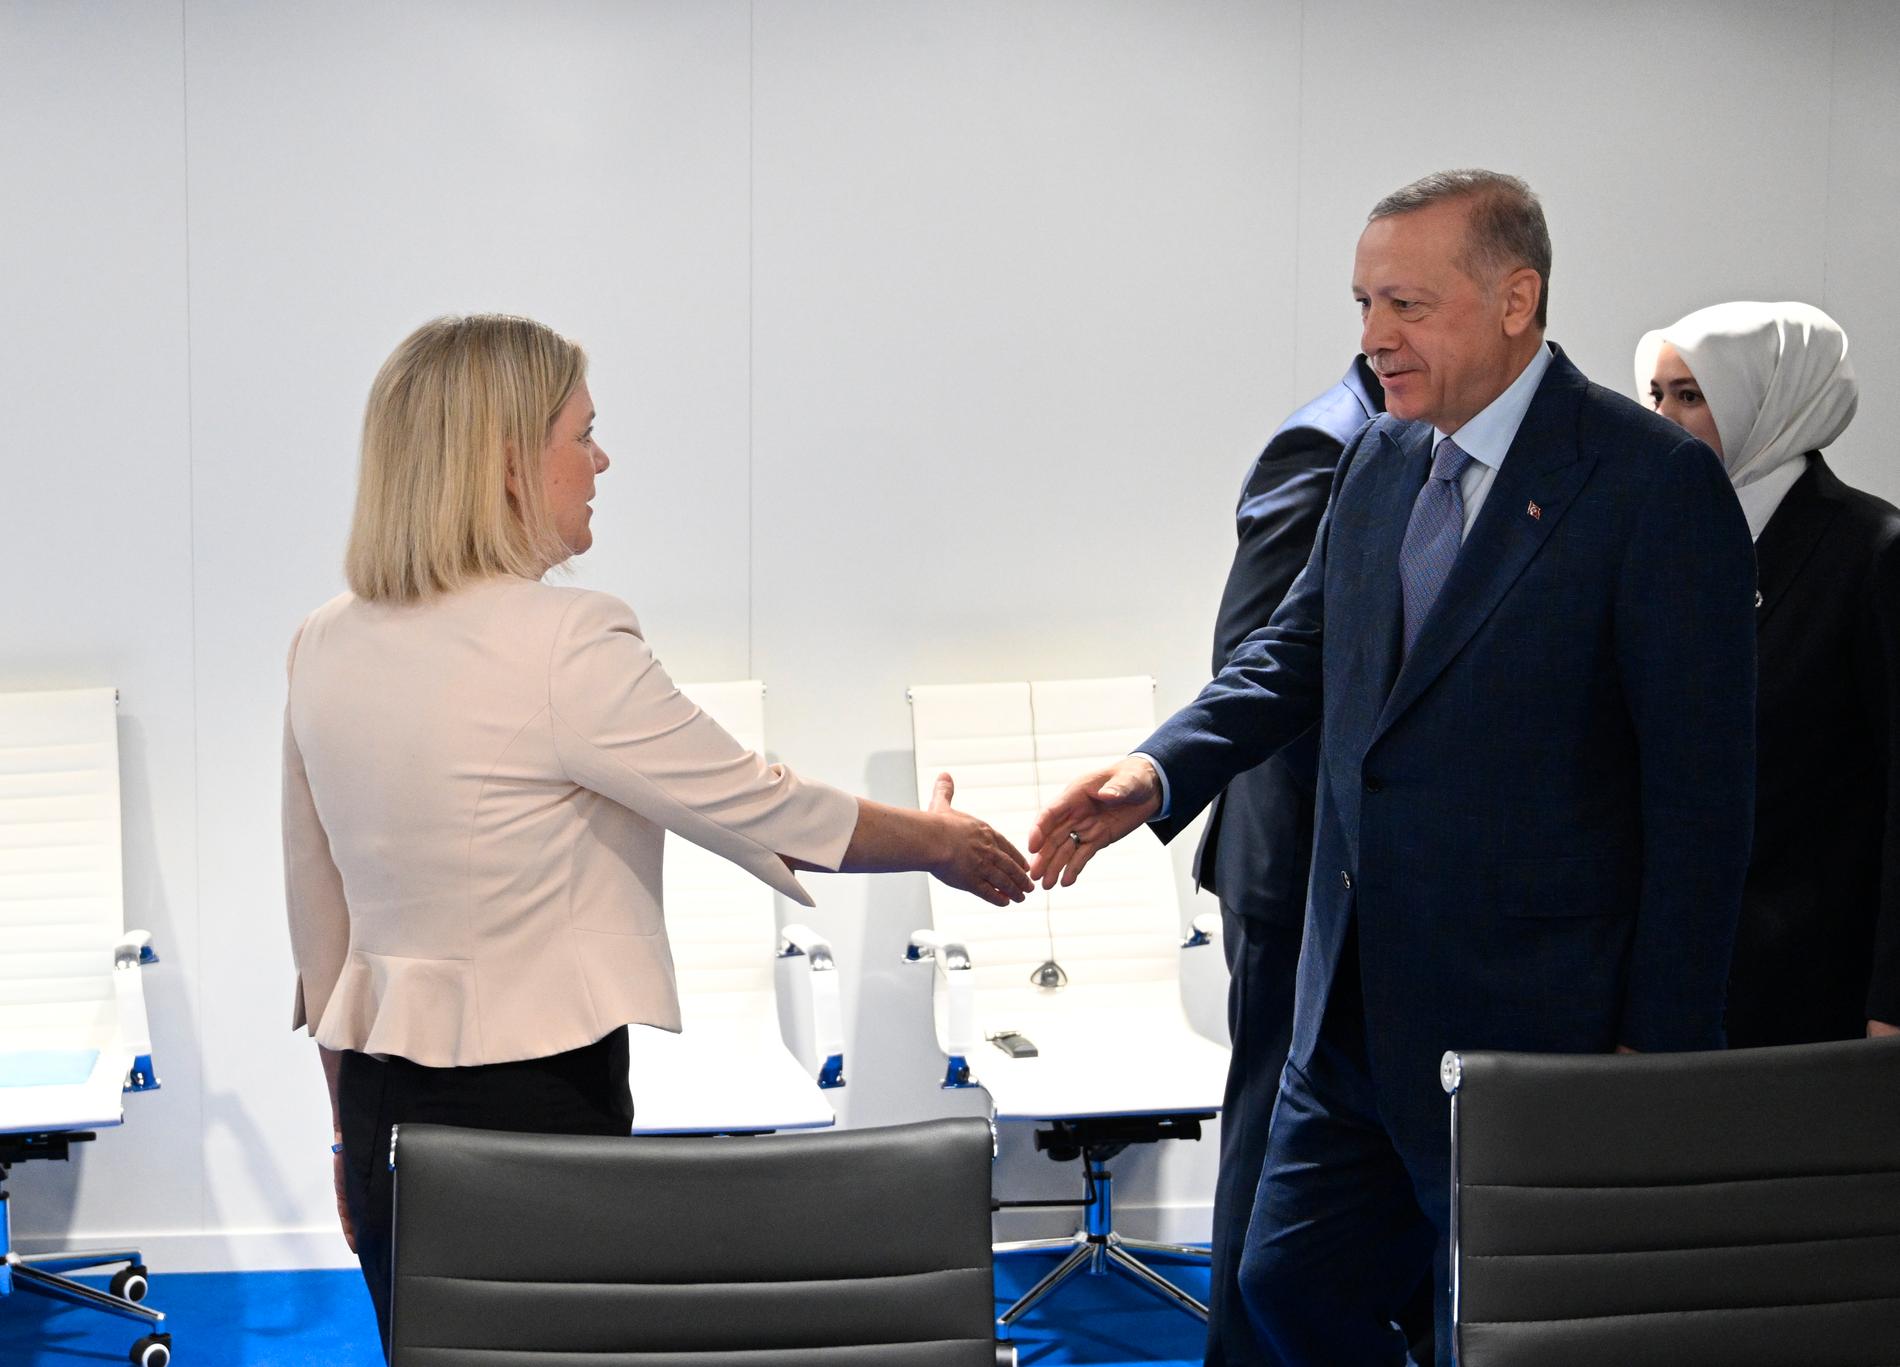 Sveriges statsminister Magdalena Andersson och Turkiets president Recep Tayyip Erdogan efter samtalen om Sveriges och Finlands Natoansökan inför Natoländernas stora toppmöte.